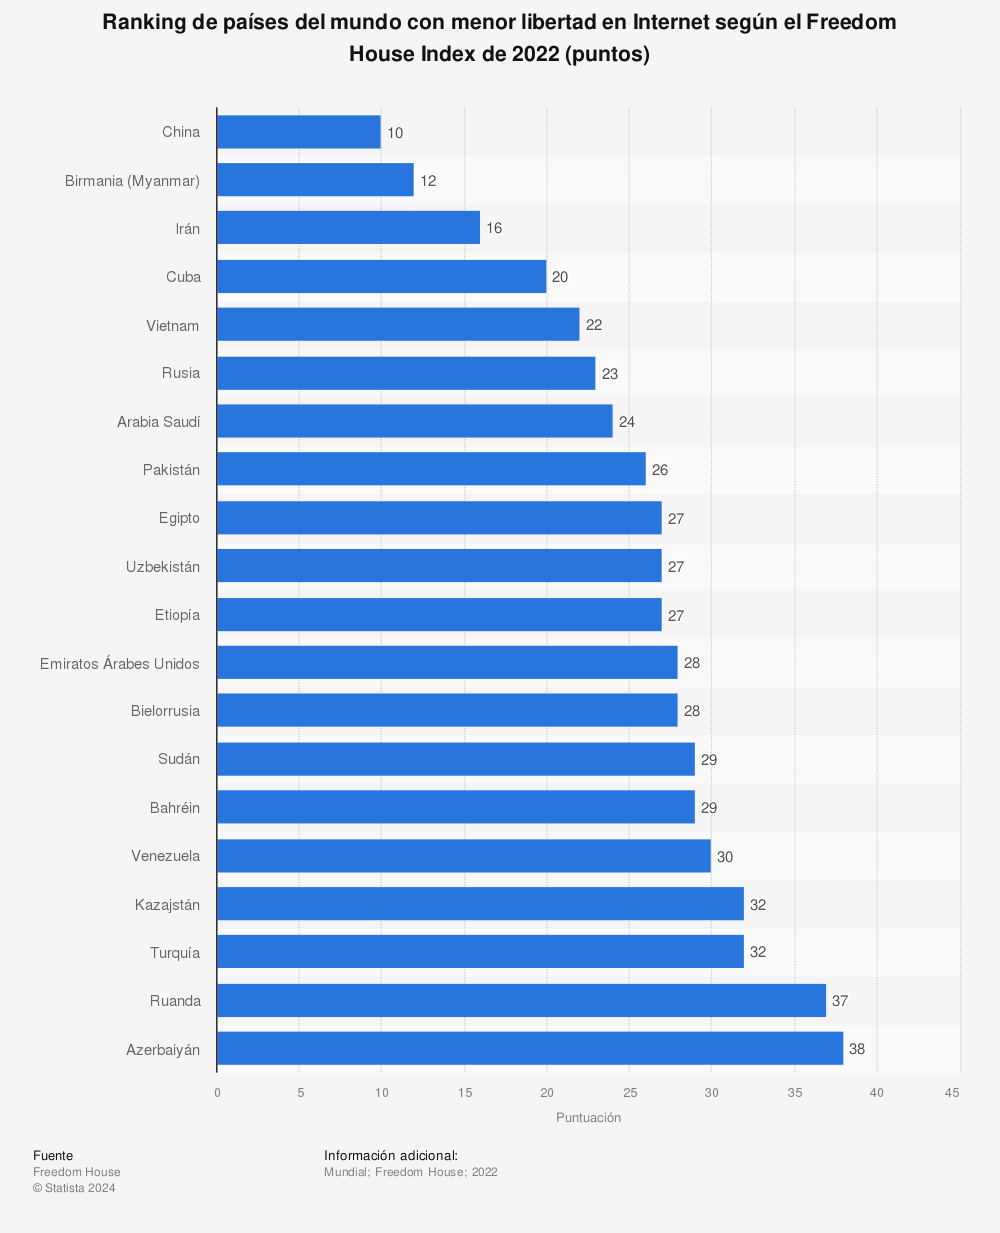 Estadística: Grado de libertad en Internet en países seleccionados según Freedom House Index de 2015 (puntos del índice) | Statista